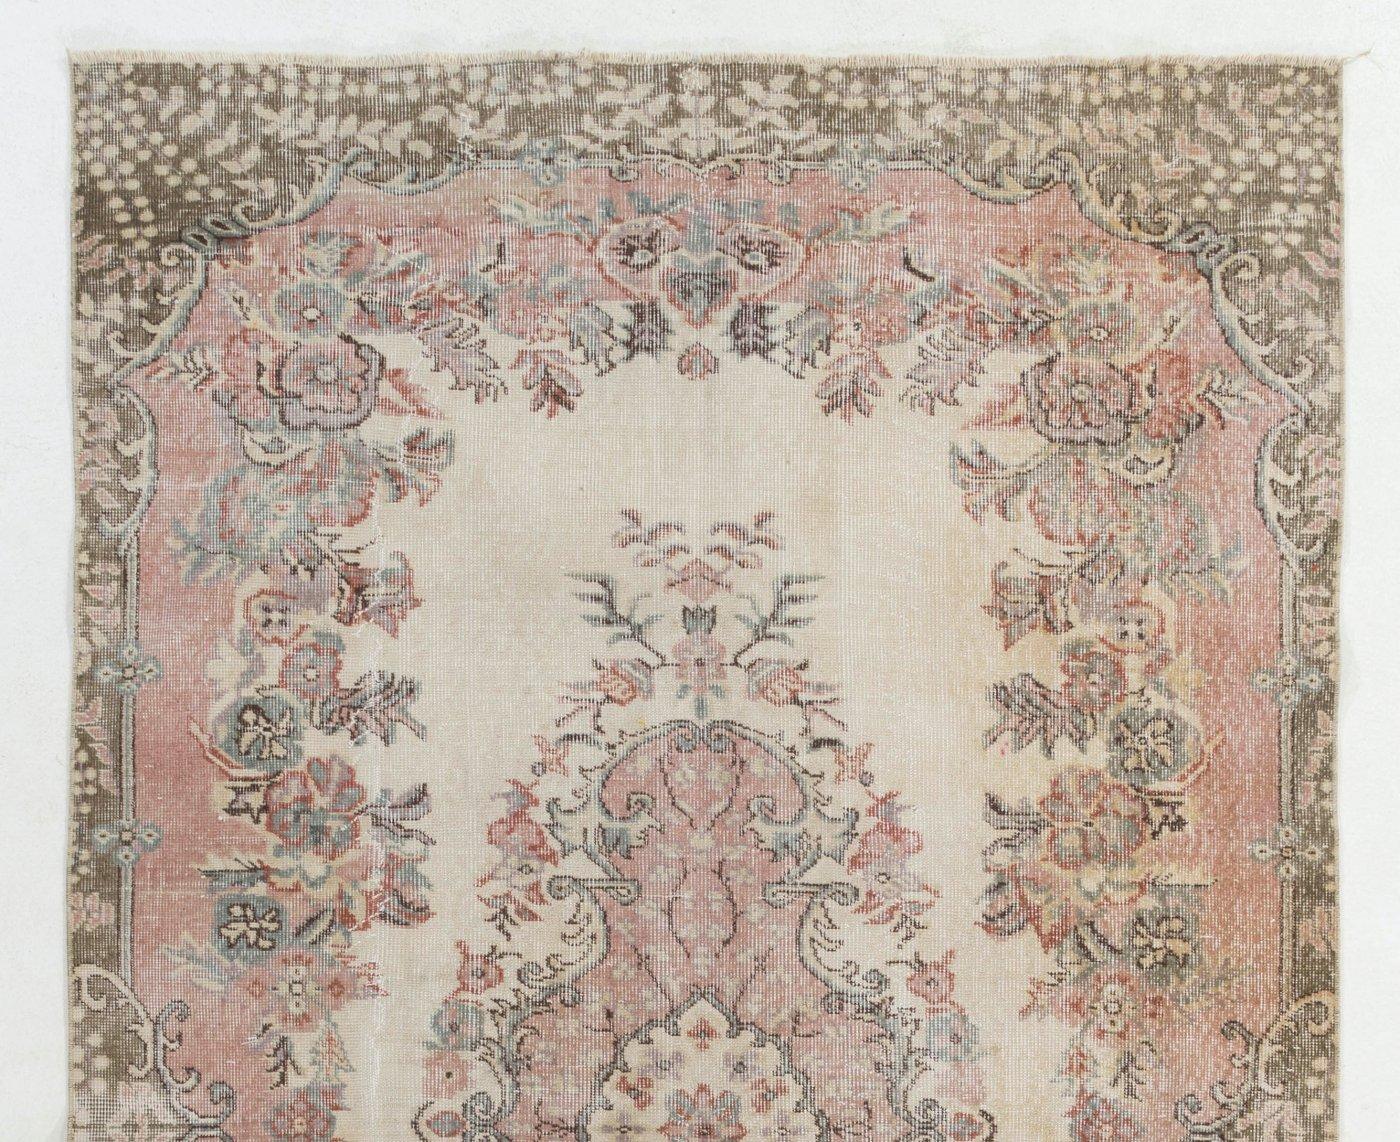 Tapis turc vintage noué à la main. Le tapis présente un motif de médaillon floral dans un champ décoré de motifs floraux. Il est en très bon état, robuste et propre comme un tapis neuf. Mesures : 5,6 x 9,6 pieds.